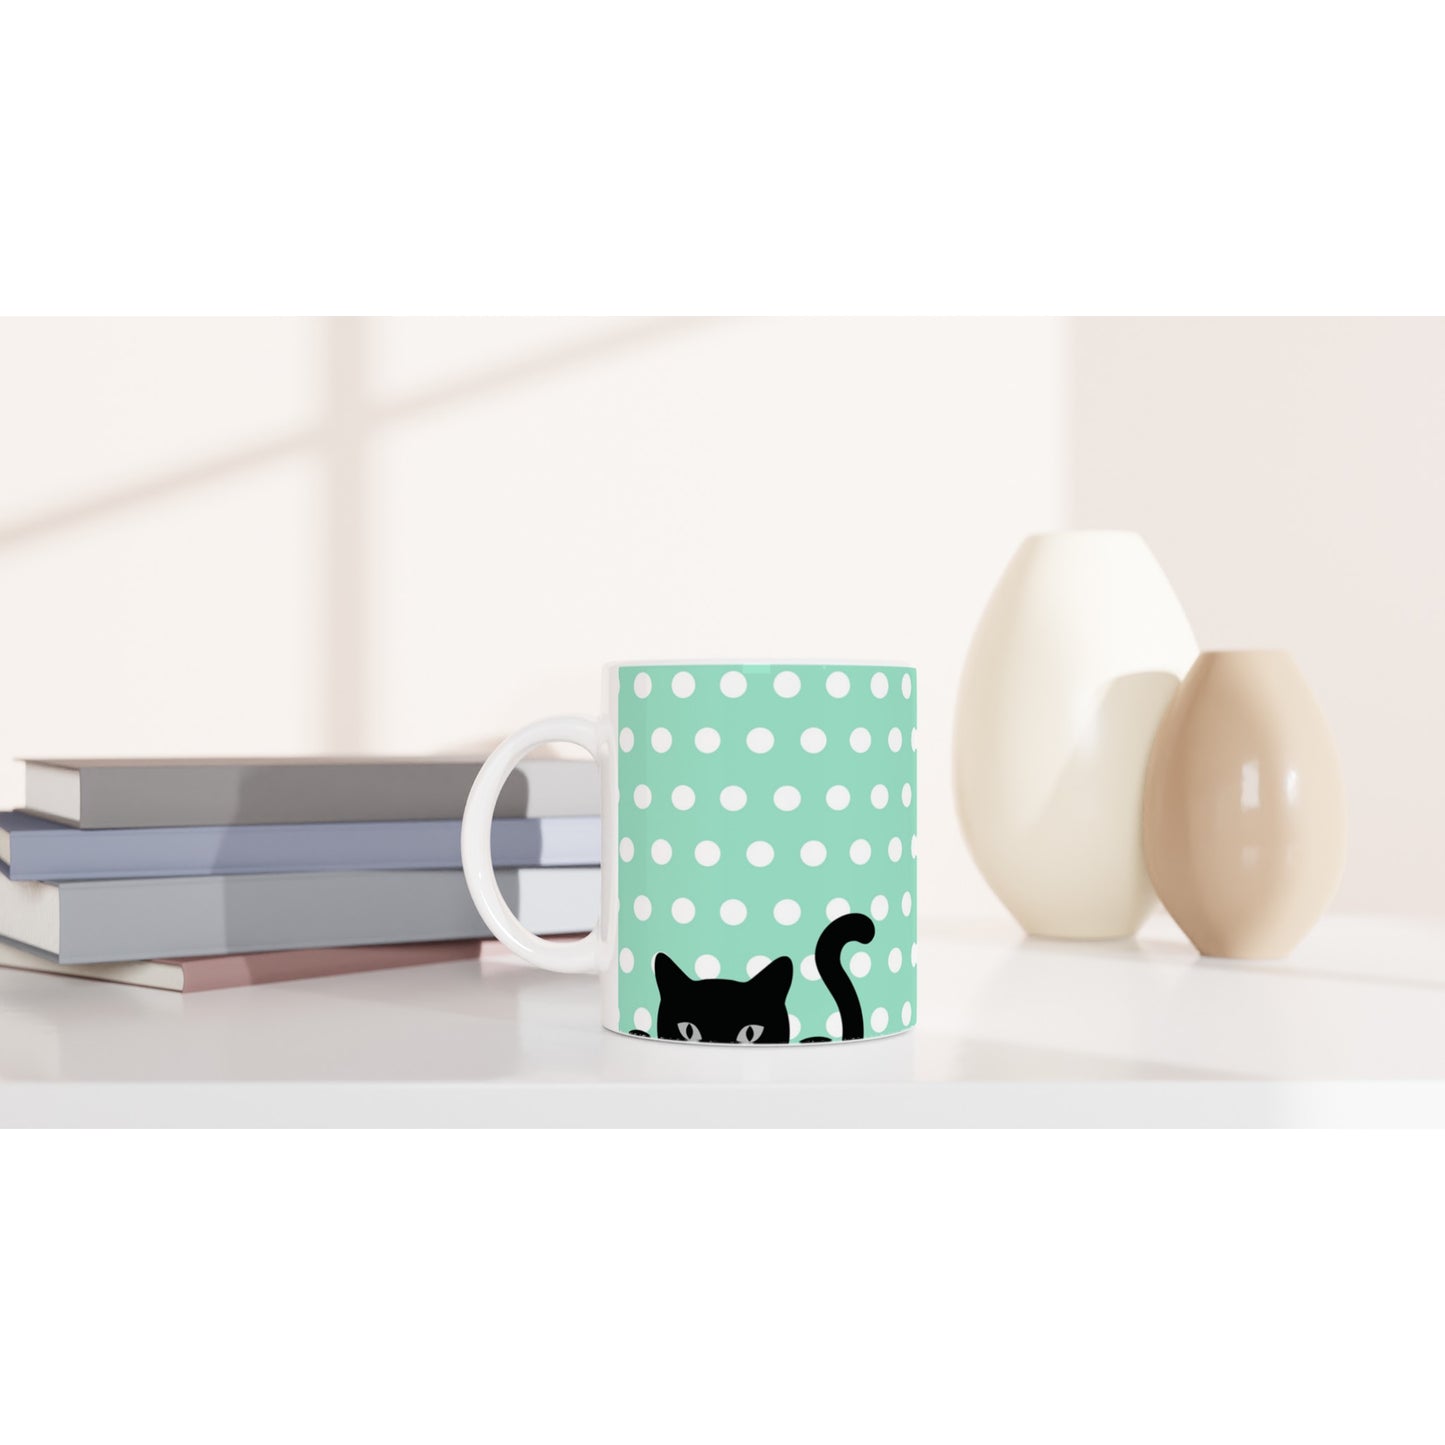 Diseño de taza con gatos y lunares